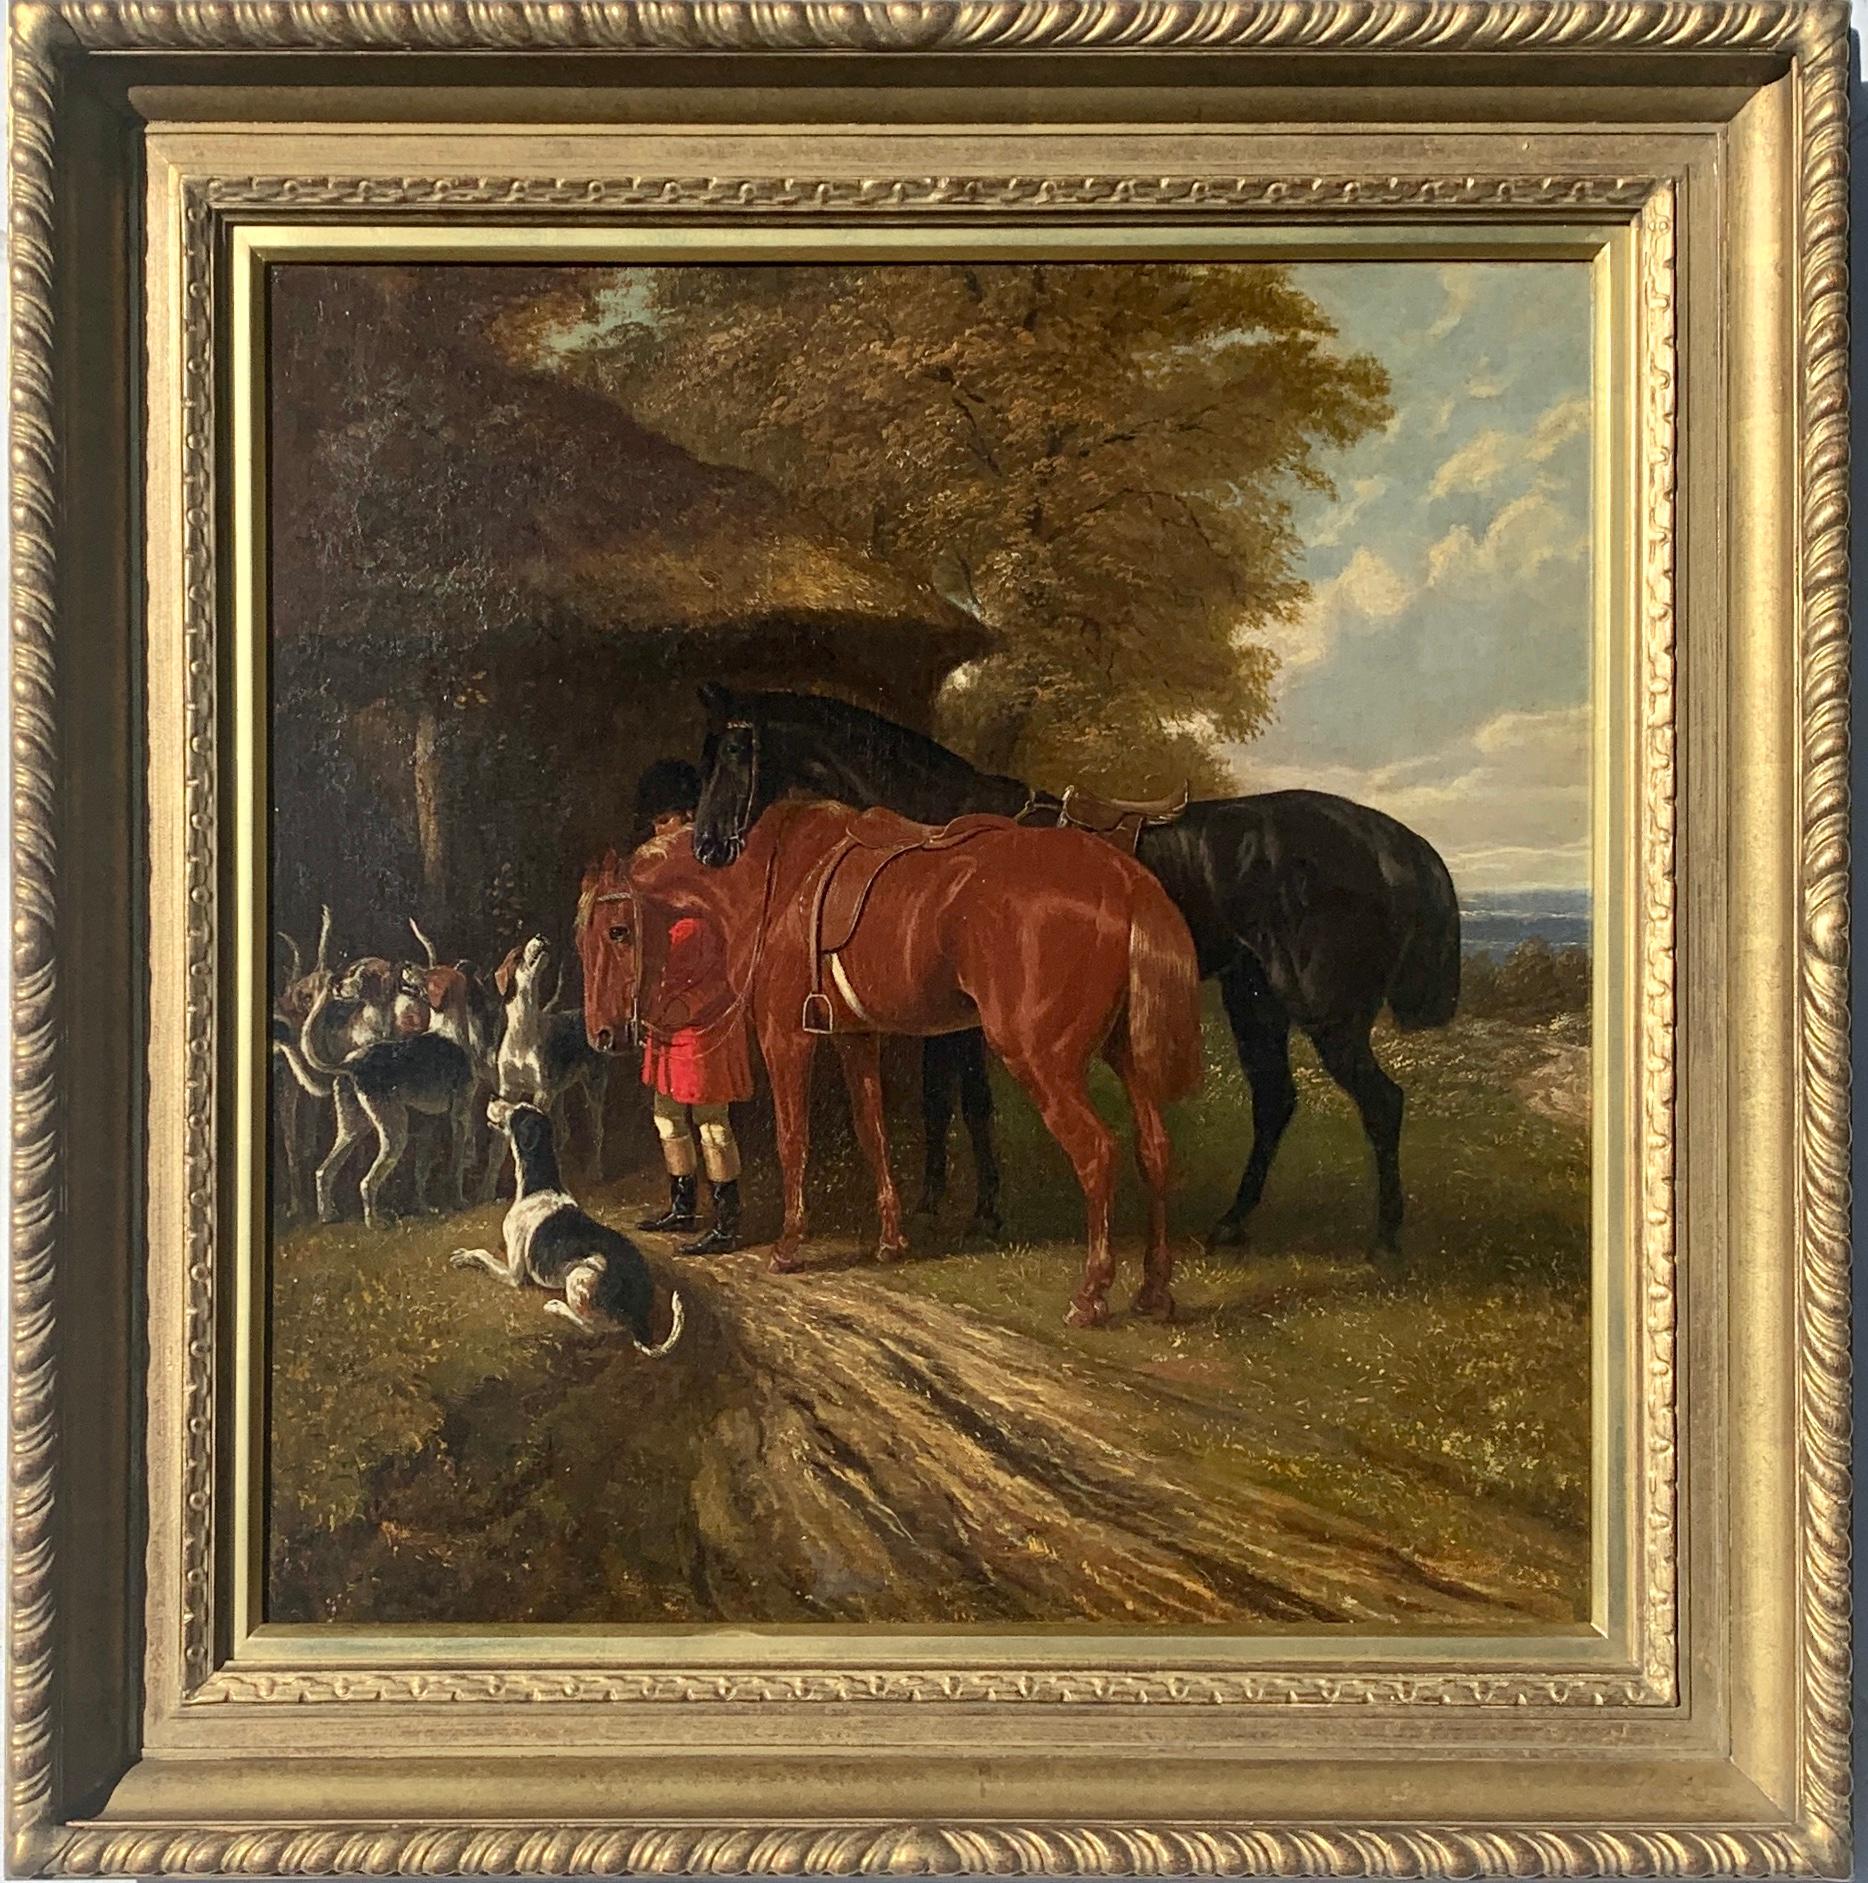 Animal Painting Attributed to Edward. B. Herberte - Une maison victorienne anglaise du 19e siècle  Chasse au renard, scène sportive avec chiens et chasseur